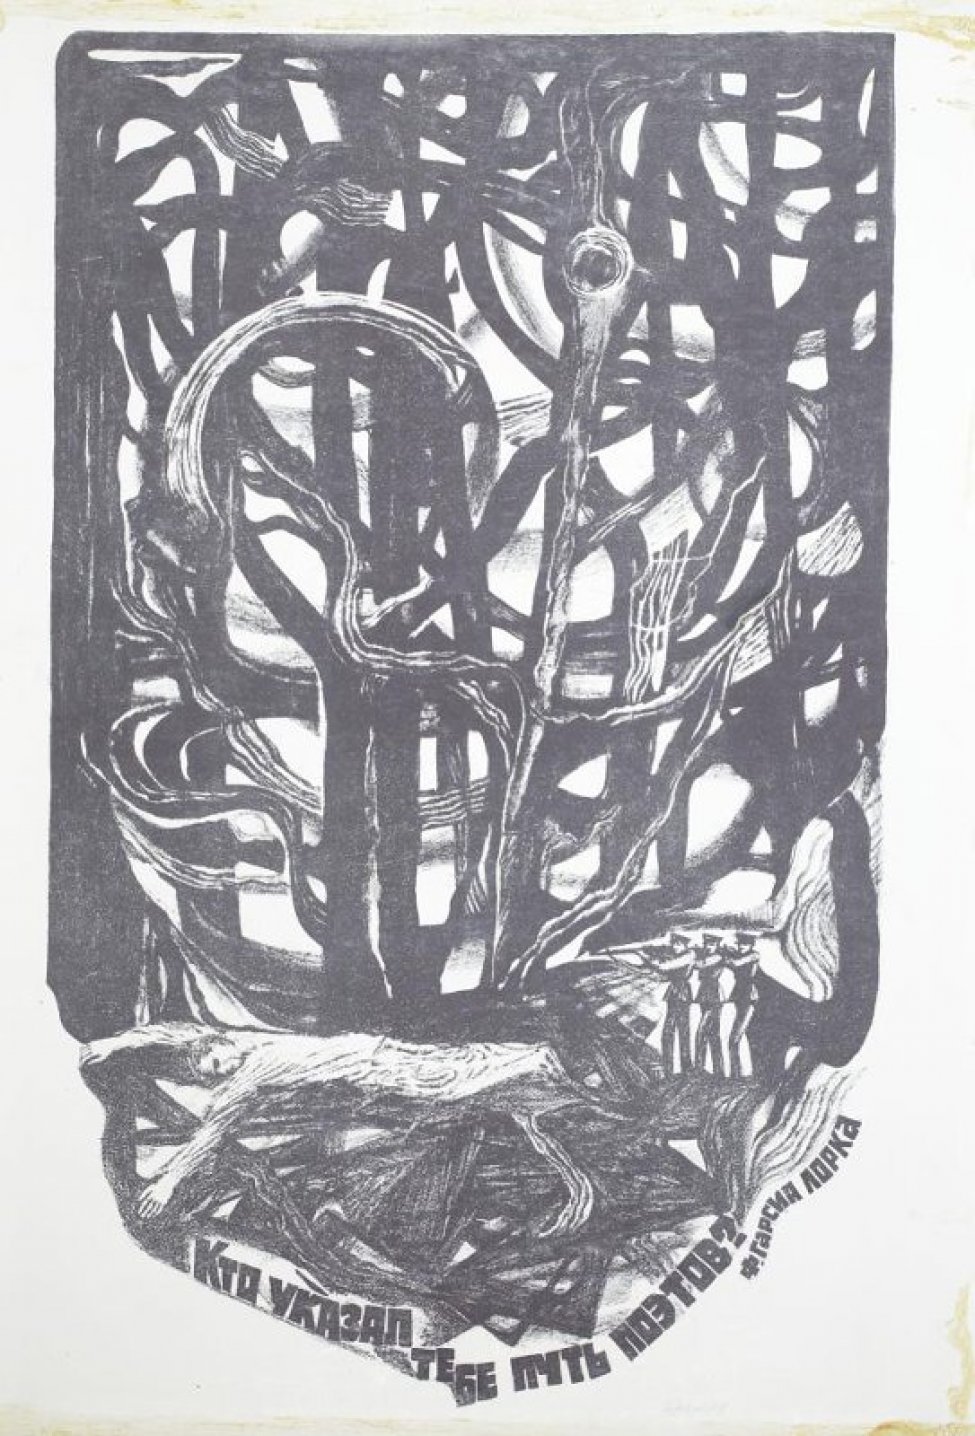 На фоне стилизованно изображенного леса - фигура человека, лежащего ничком, справа - фигуры трех солдат с ружьями на плече. Внизу текст: " Кто указал тебе путь поэтов? Ф.Гарсиа Лорка".